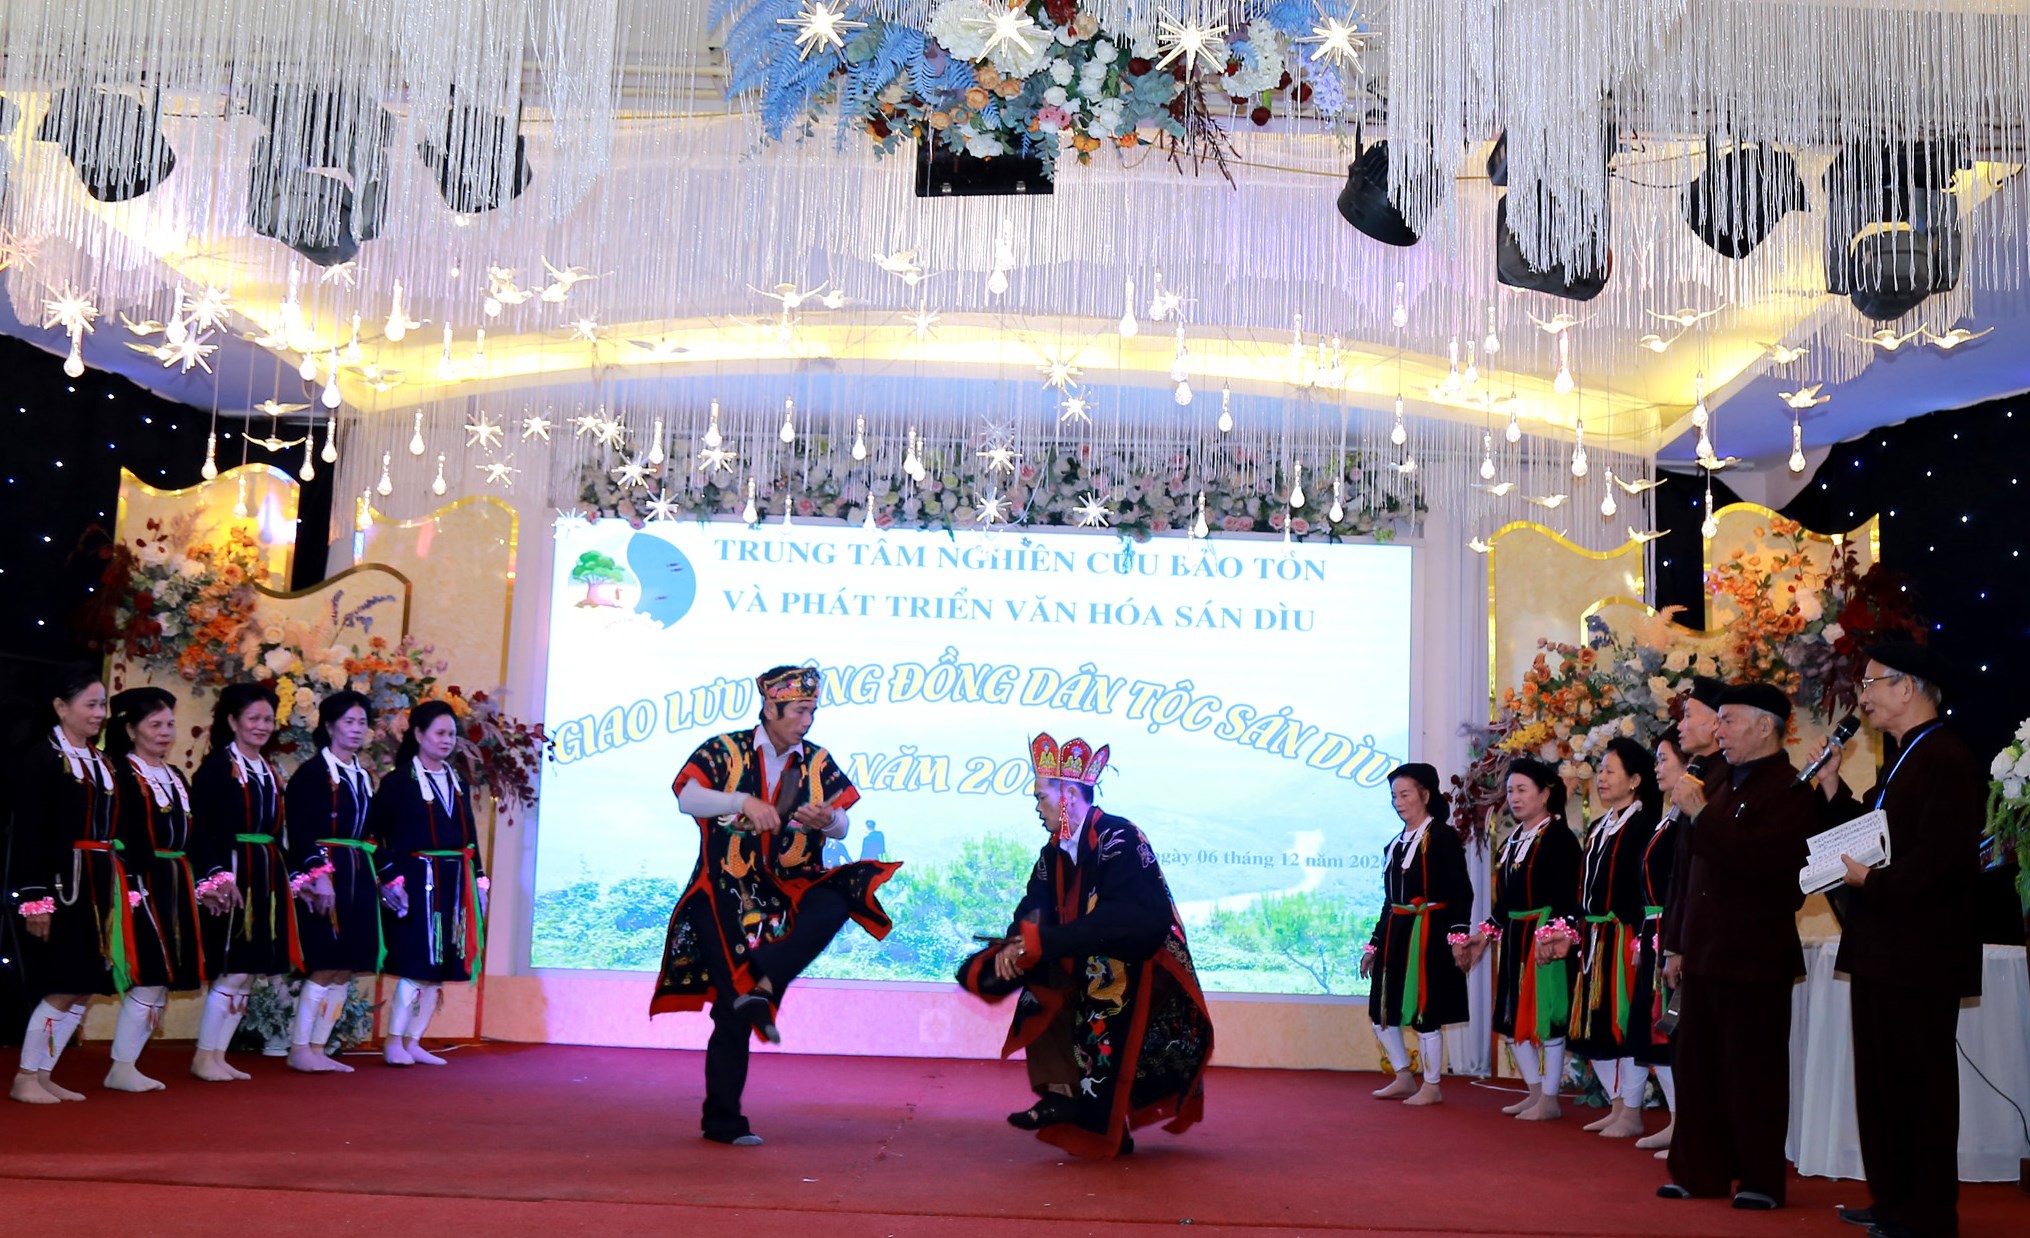 Đoàn nghệ nhân Sán Dìu tỉnh Thái Nguyên biểu diễn trích đoạn “Nghi lễ cấp sắc” tại buổi giao lưu. Ảnh: Thái Sinh Trần, Khổng Yến Anh.